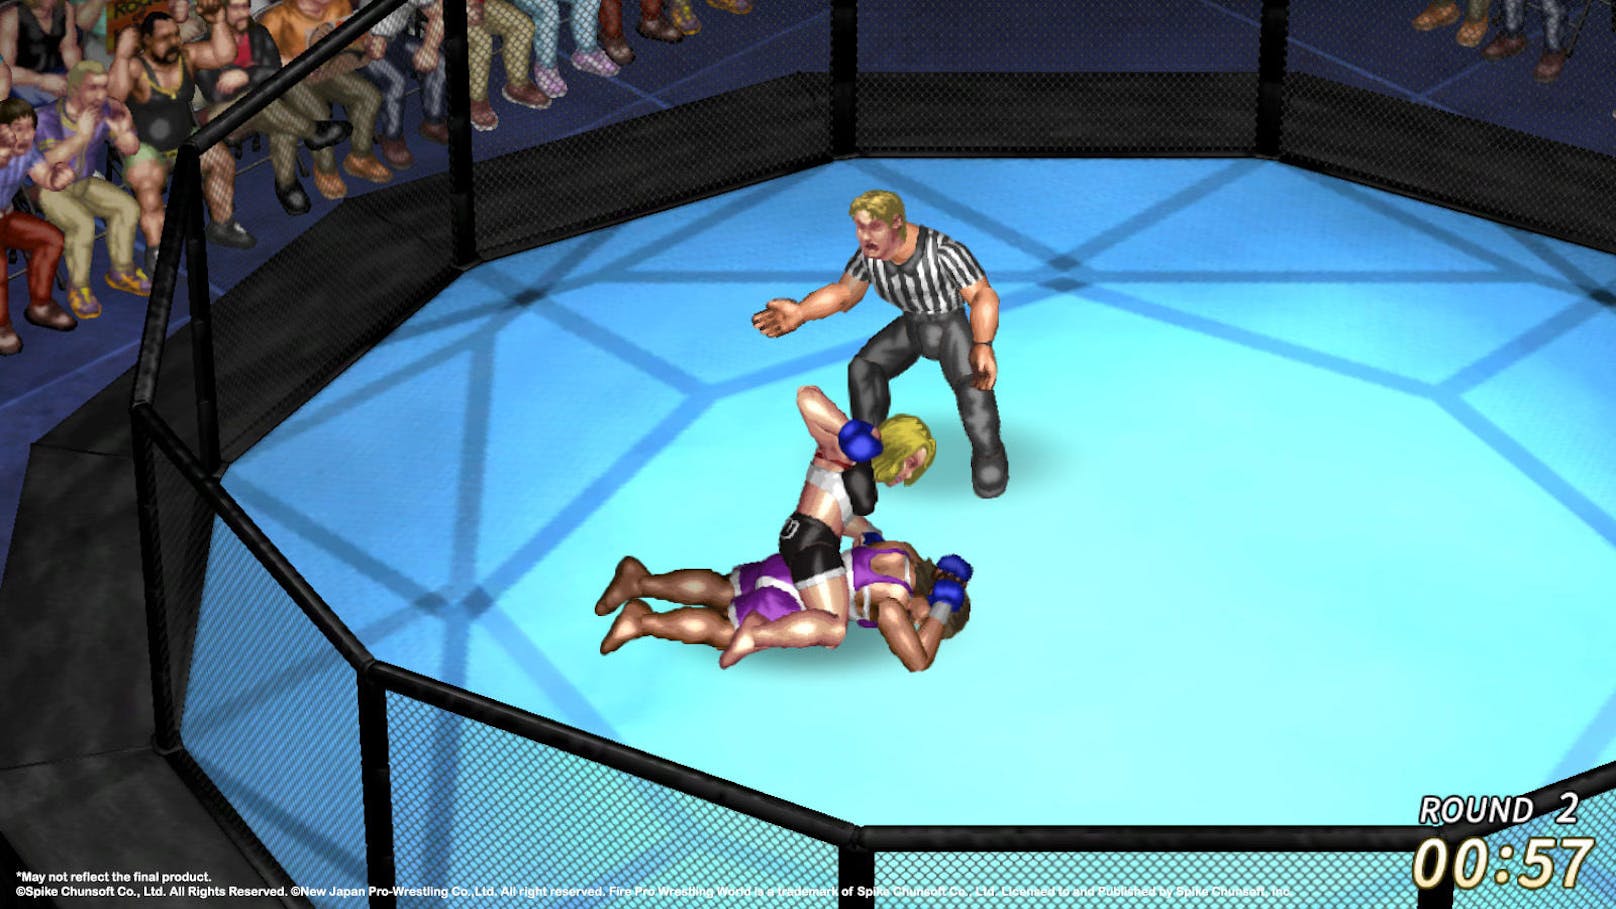 Die Wrestler bewegen sich ein wenig hölzern durch den Ring, die Move-Sets sind relativ beschränkt. Dennoch weckt das Spiel durch den beabsichtigen Retro-Faktor coole Erinnerungen.